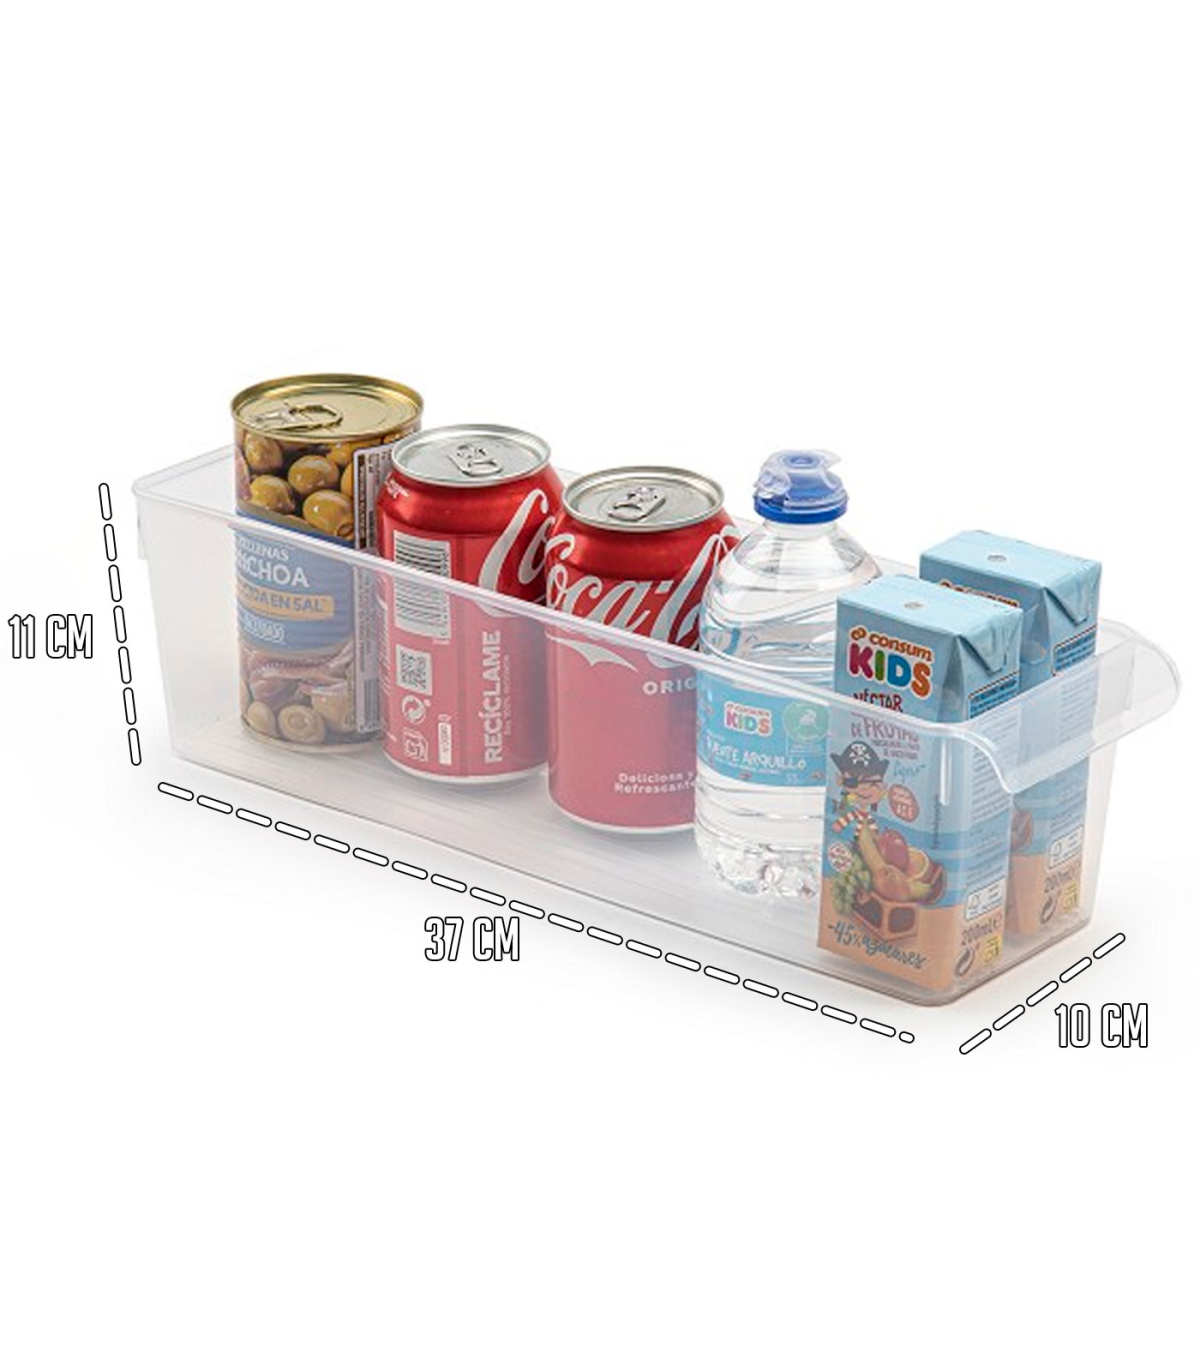 Tradineur - Cajón organizador reutilizable para frigorifico Nº 10 -  Fabricado en plástico - Recipiente de plástico transparente